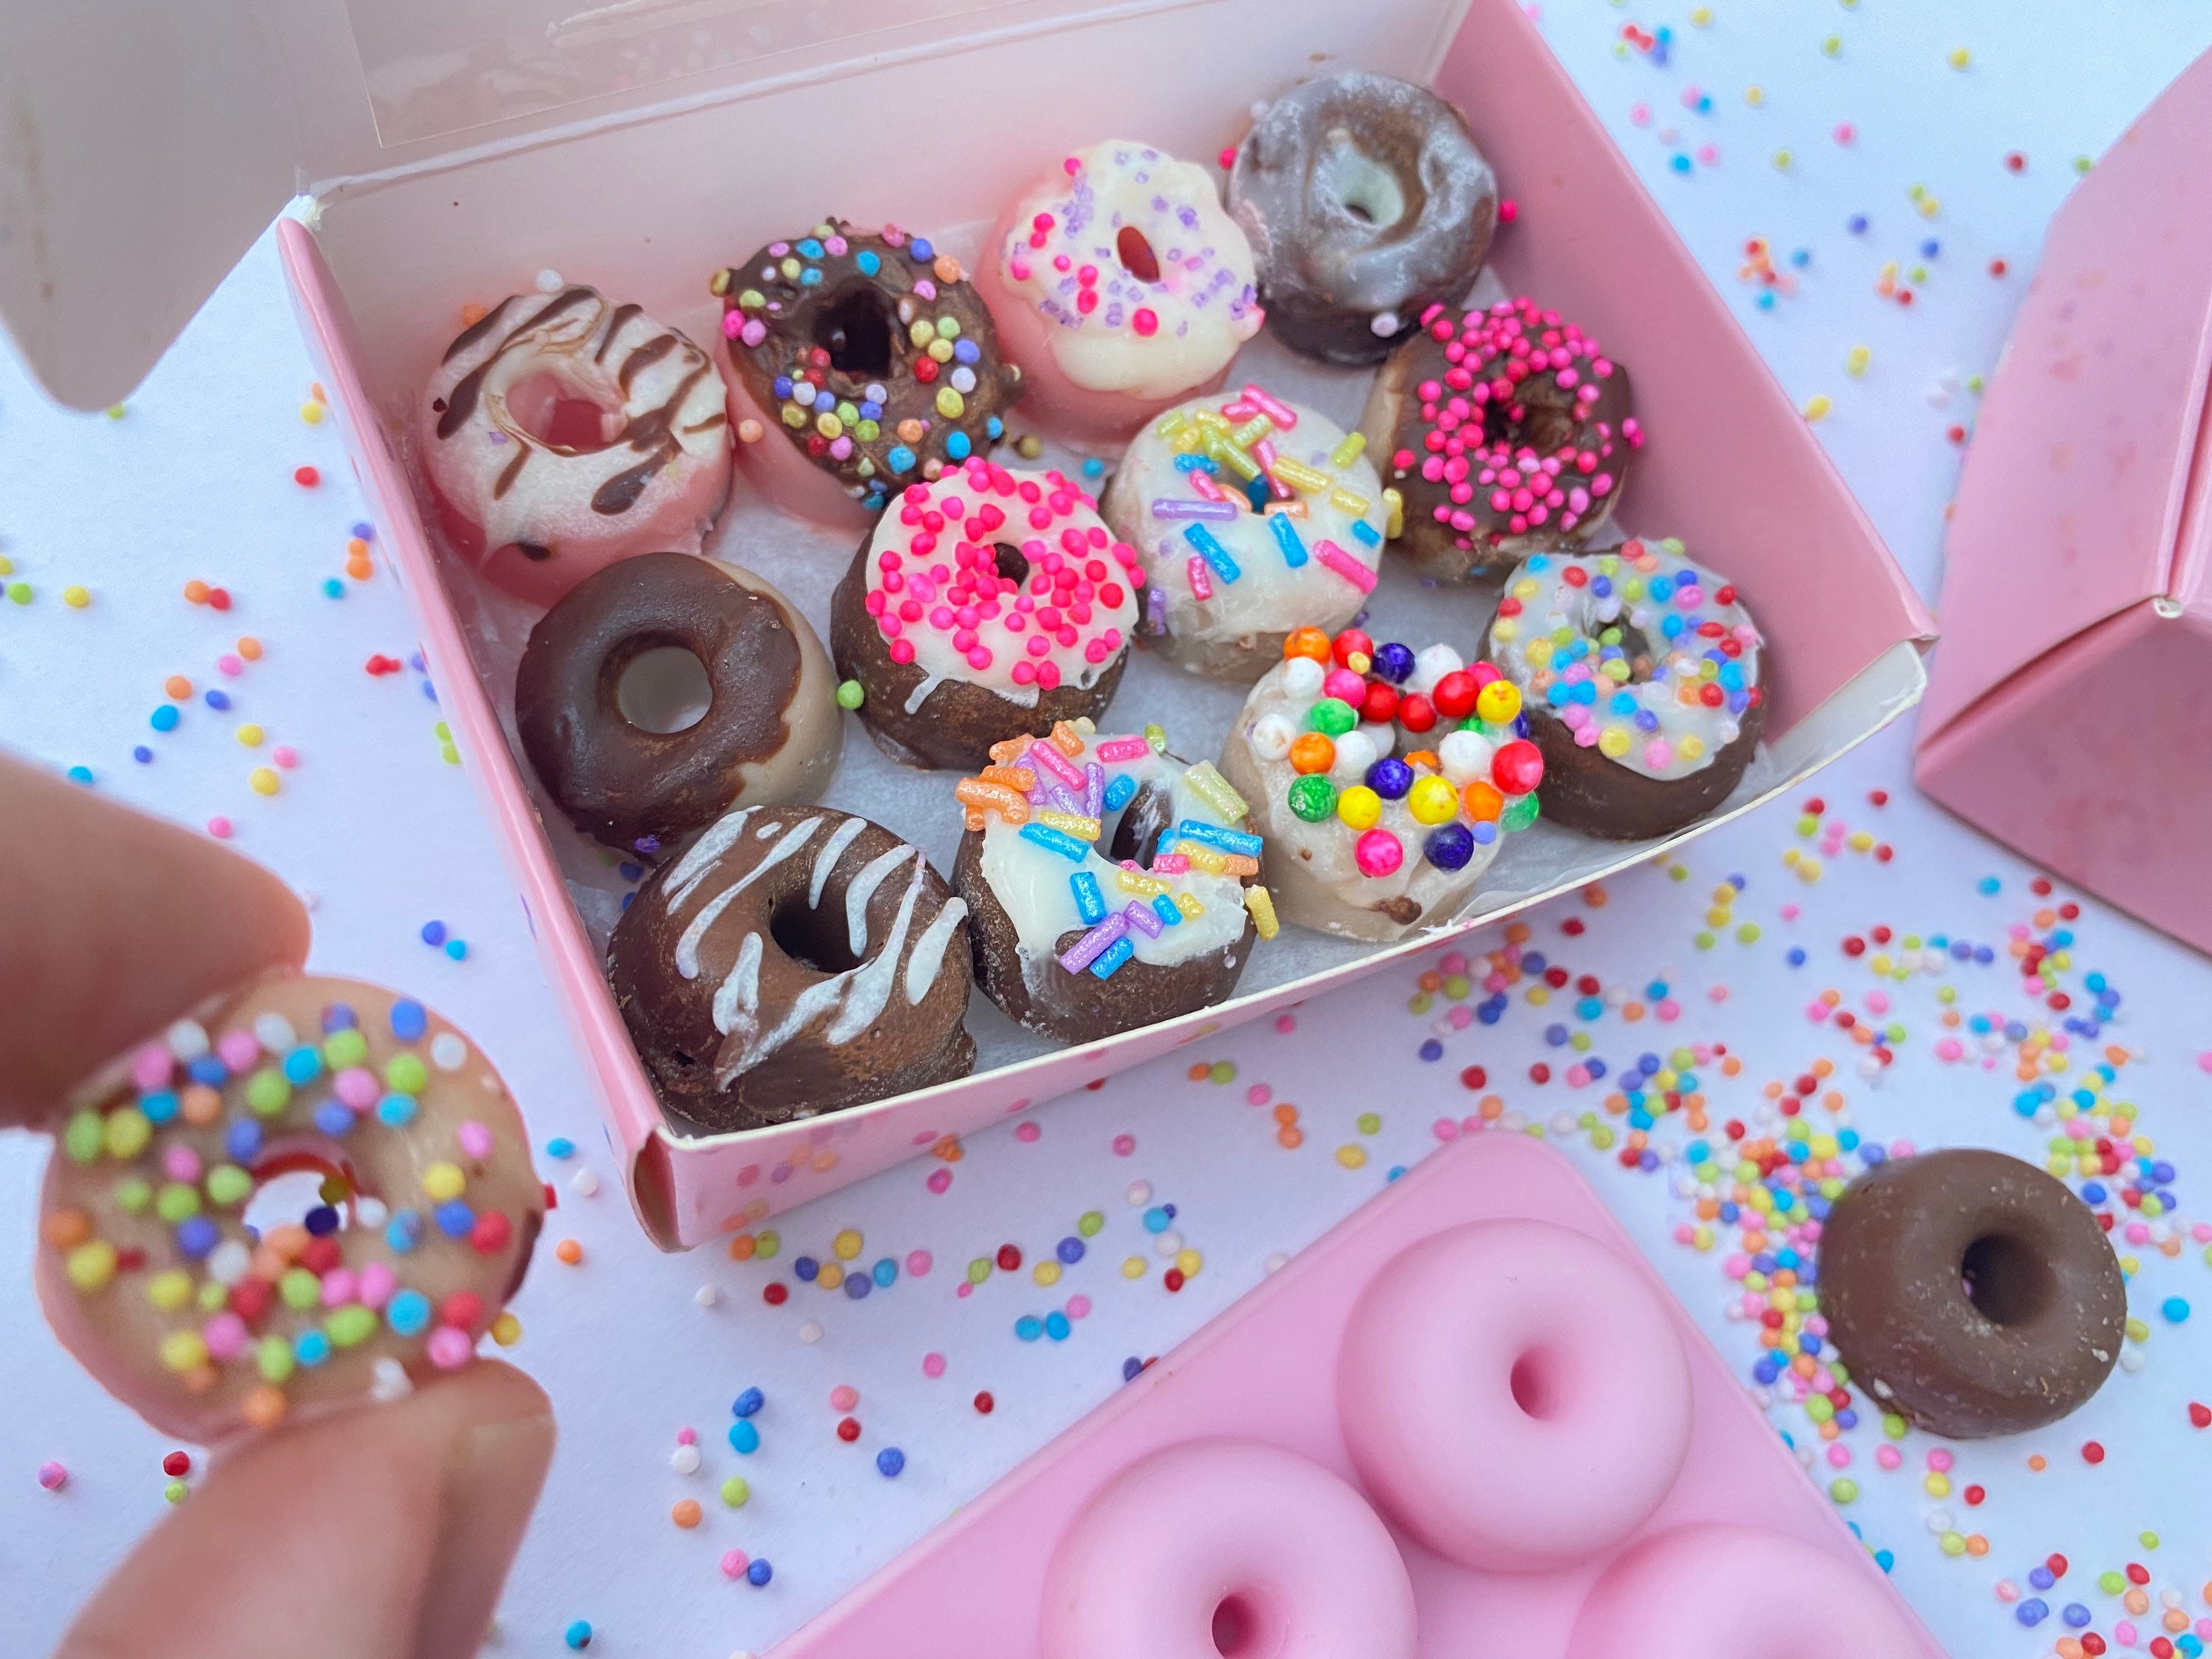 Mmm Donuts Paint Party Kits — Artsy Tessy